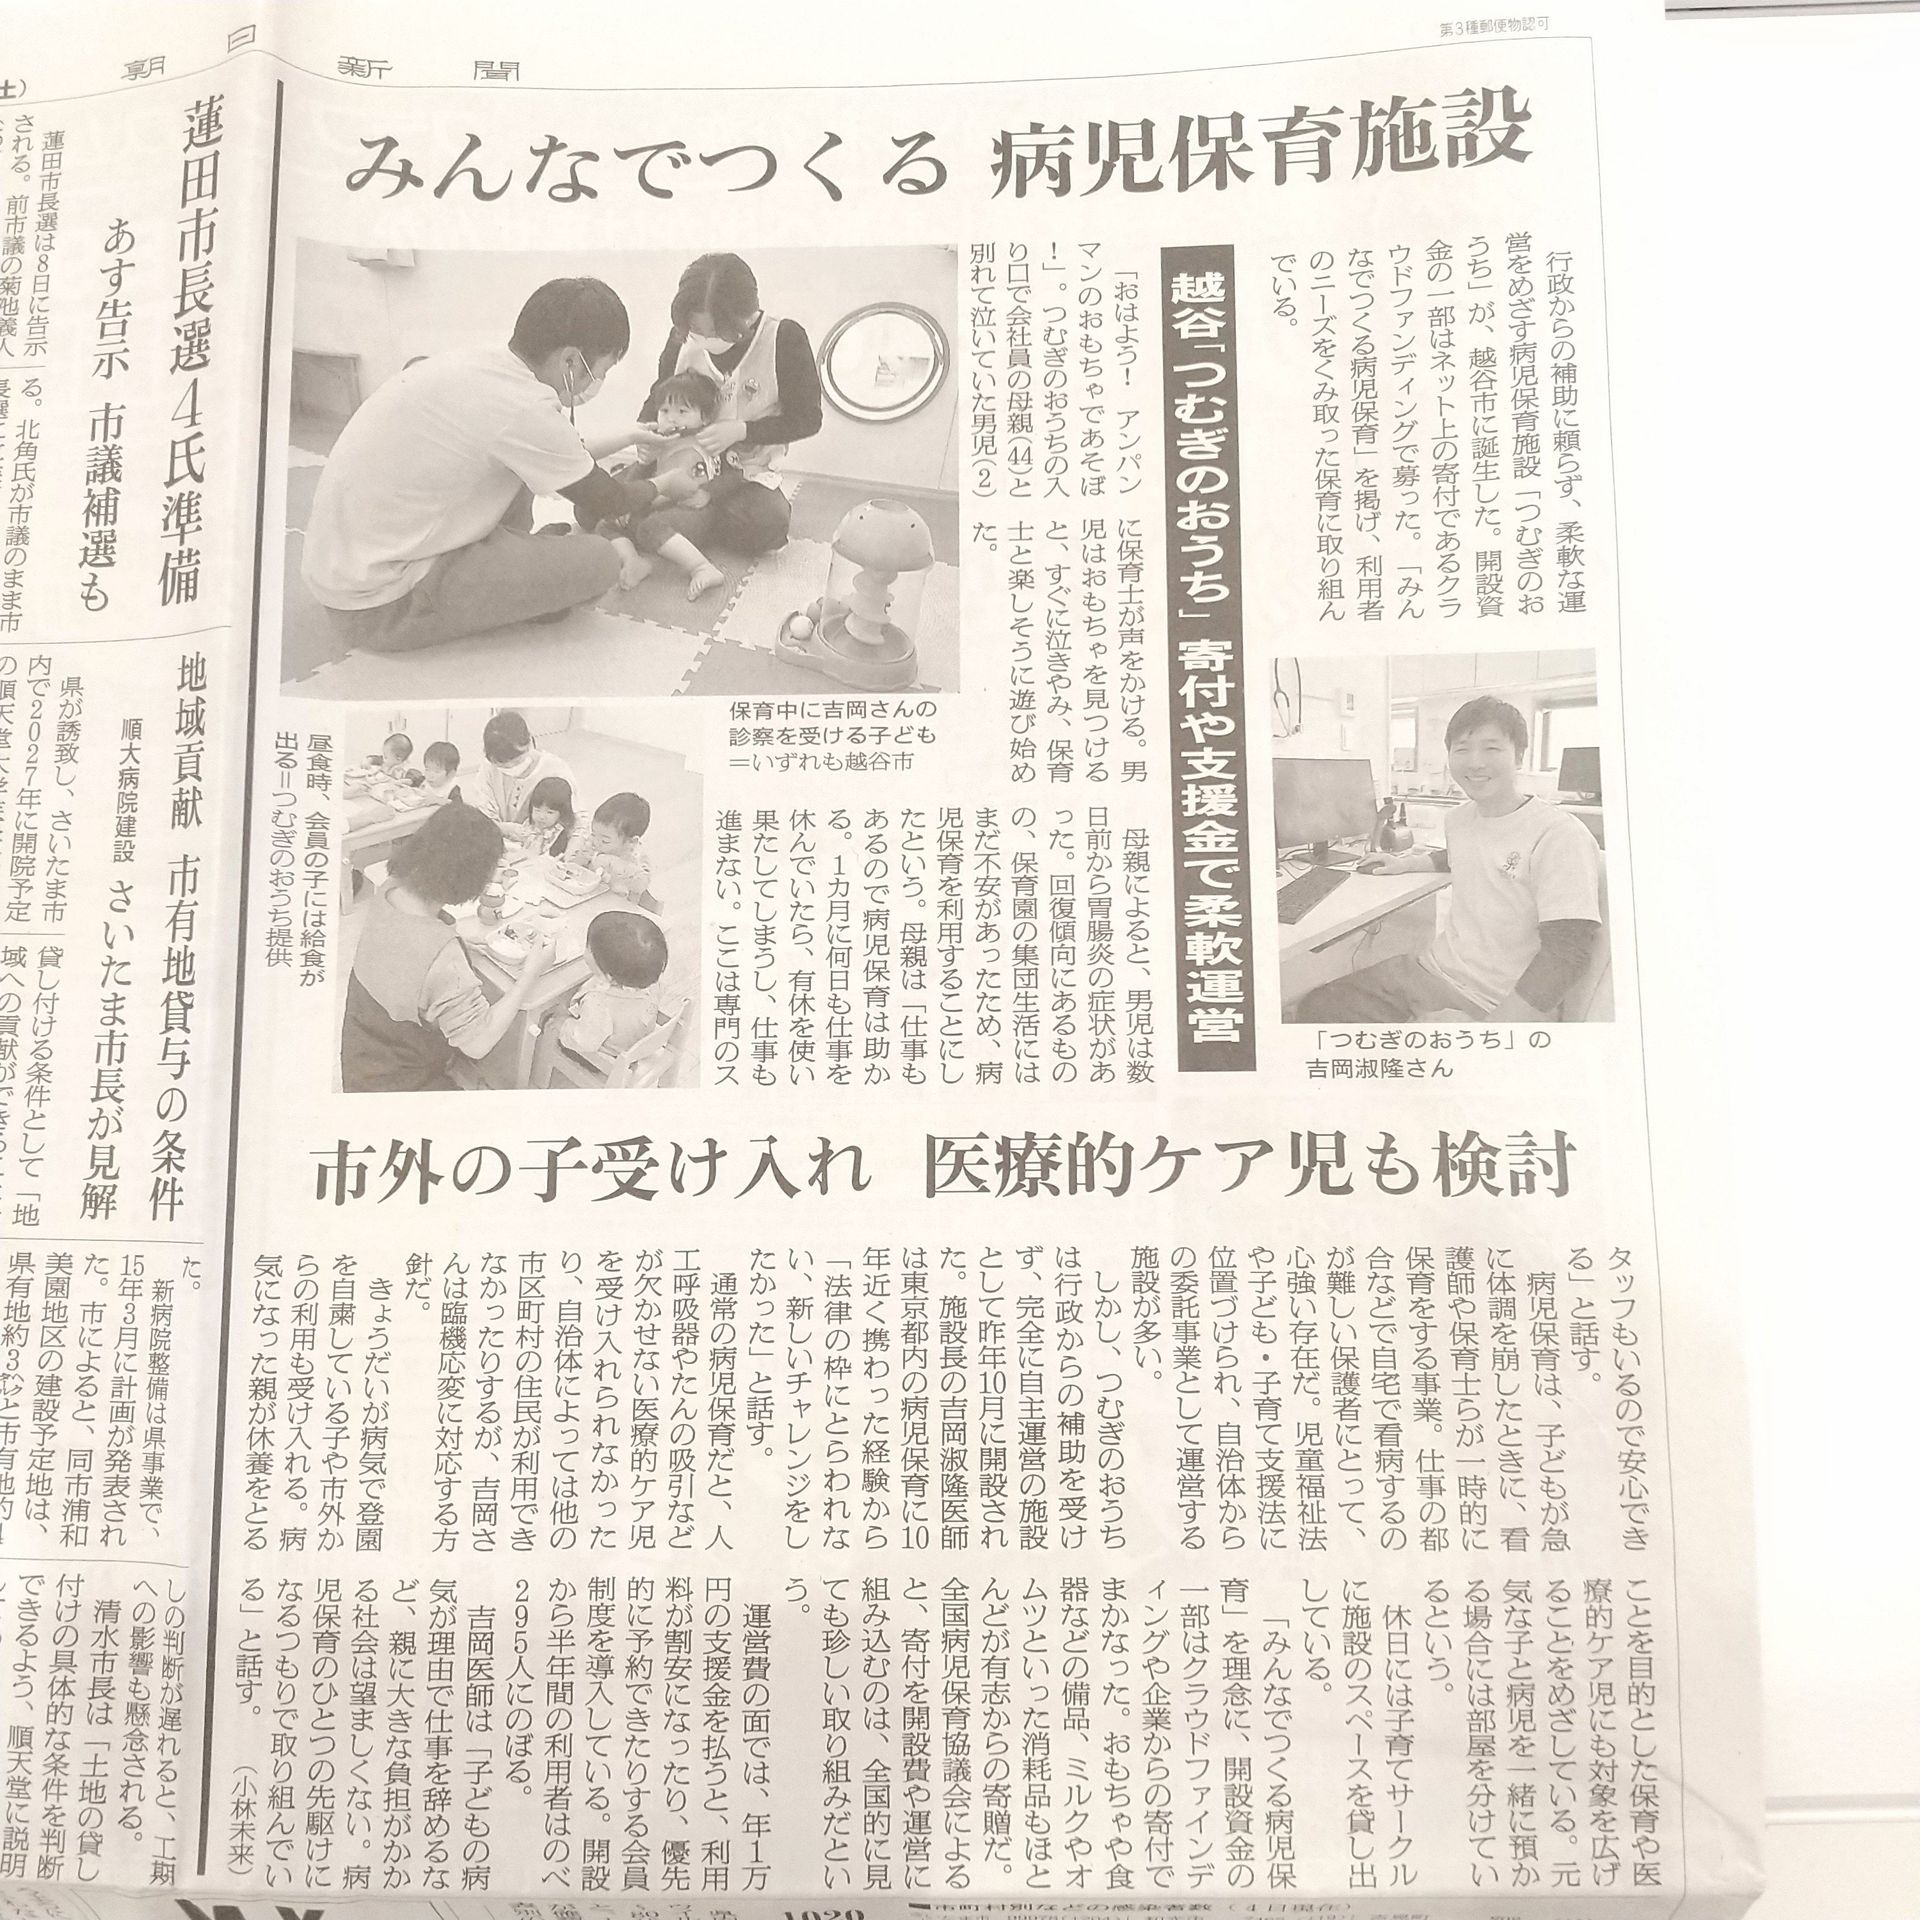 【メディア掲載】朝日新聞に掲載されました！